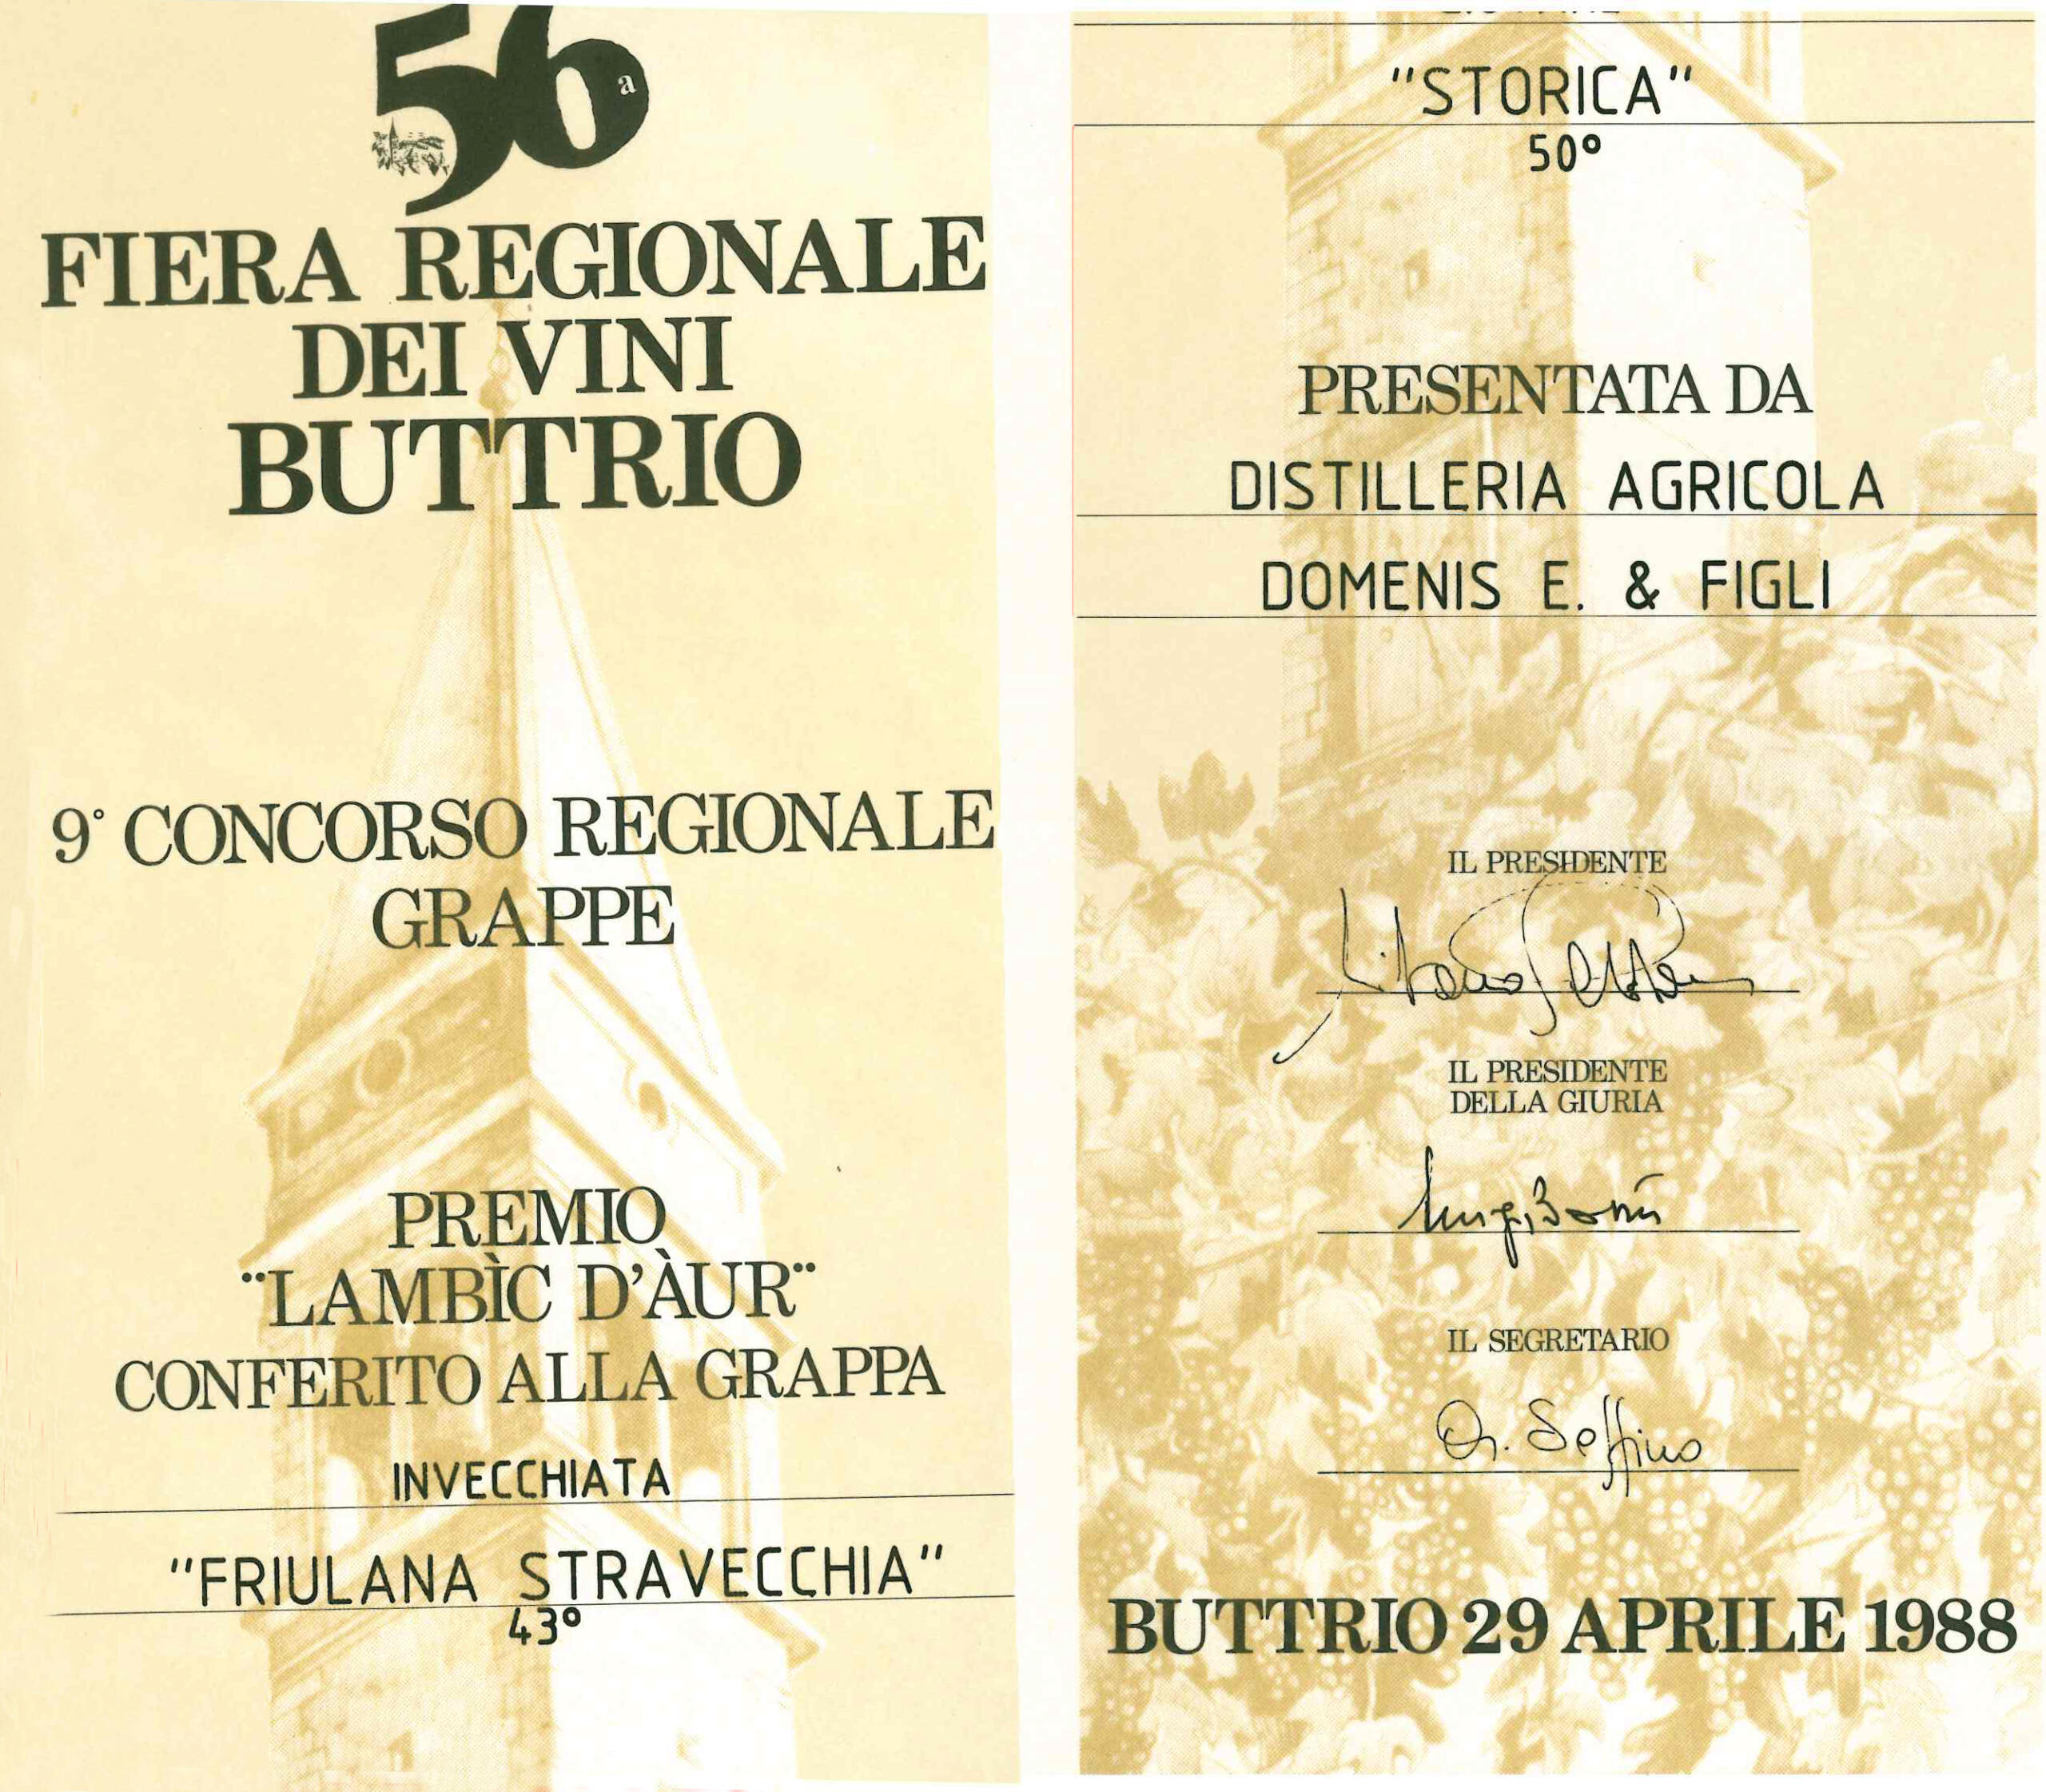 Fiera Regionale dei Vini Buttrio 1988 – Grappa Ivecchiata Friulana Stravecchia 43° e Storica 50°